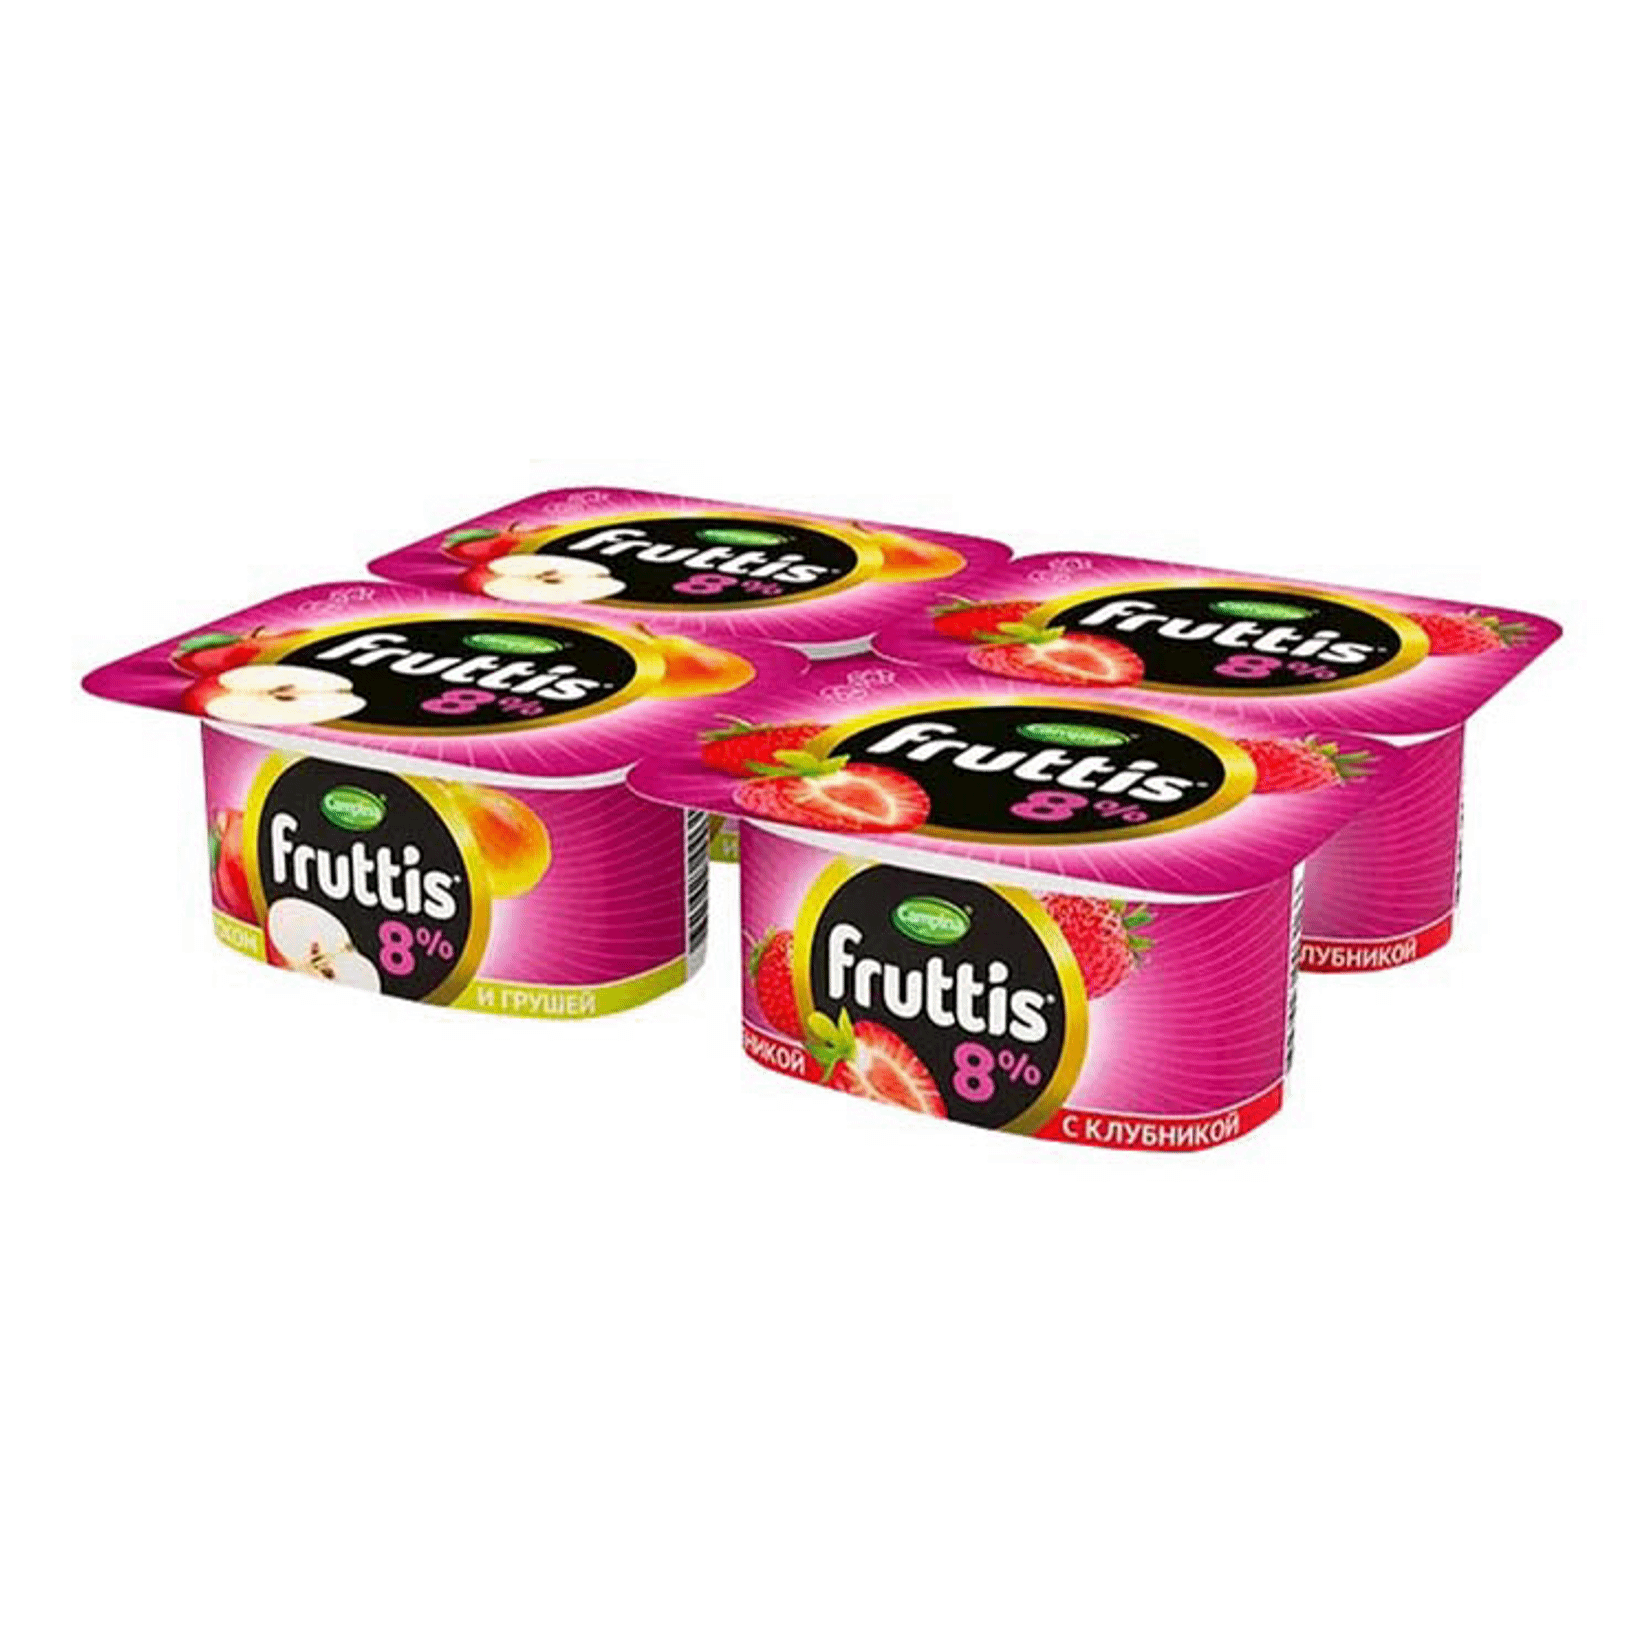 Йогуртный продукт Фрутис суперэкстра клубника яблоко груша 8% 115 г